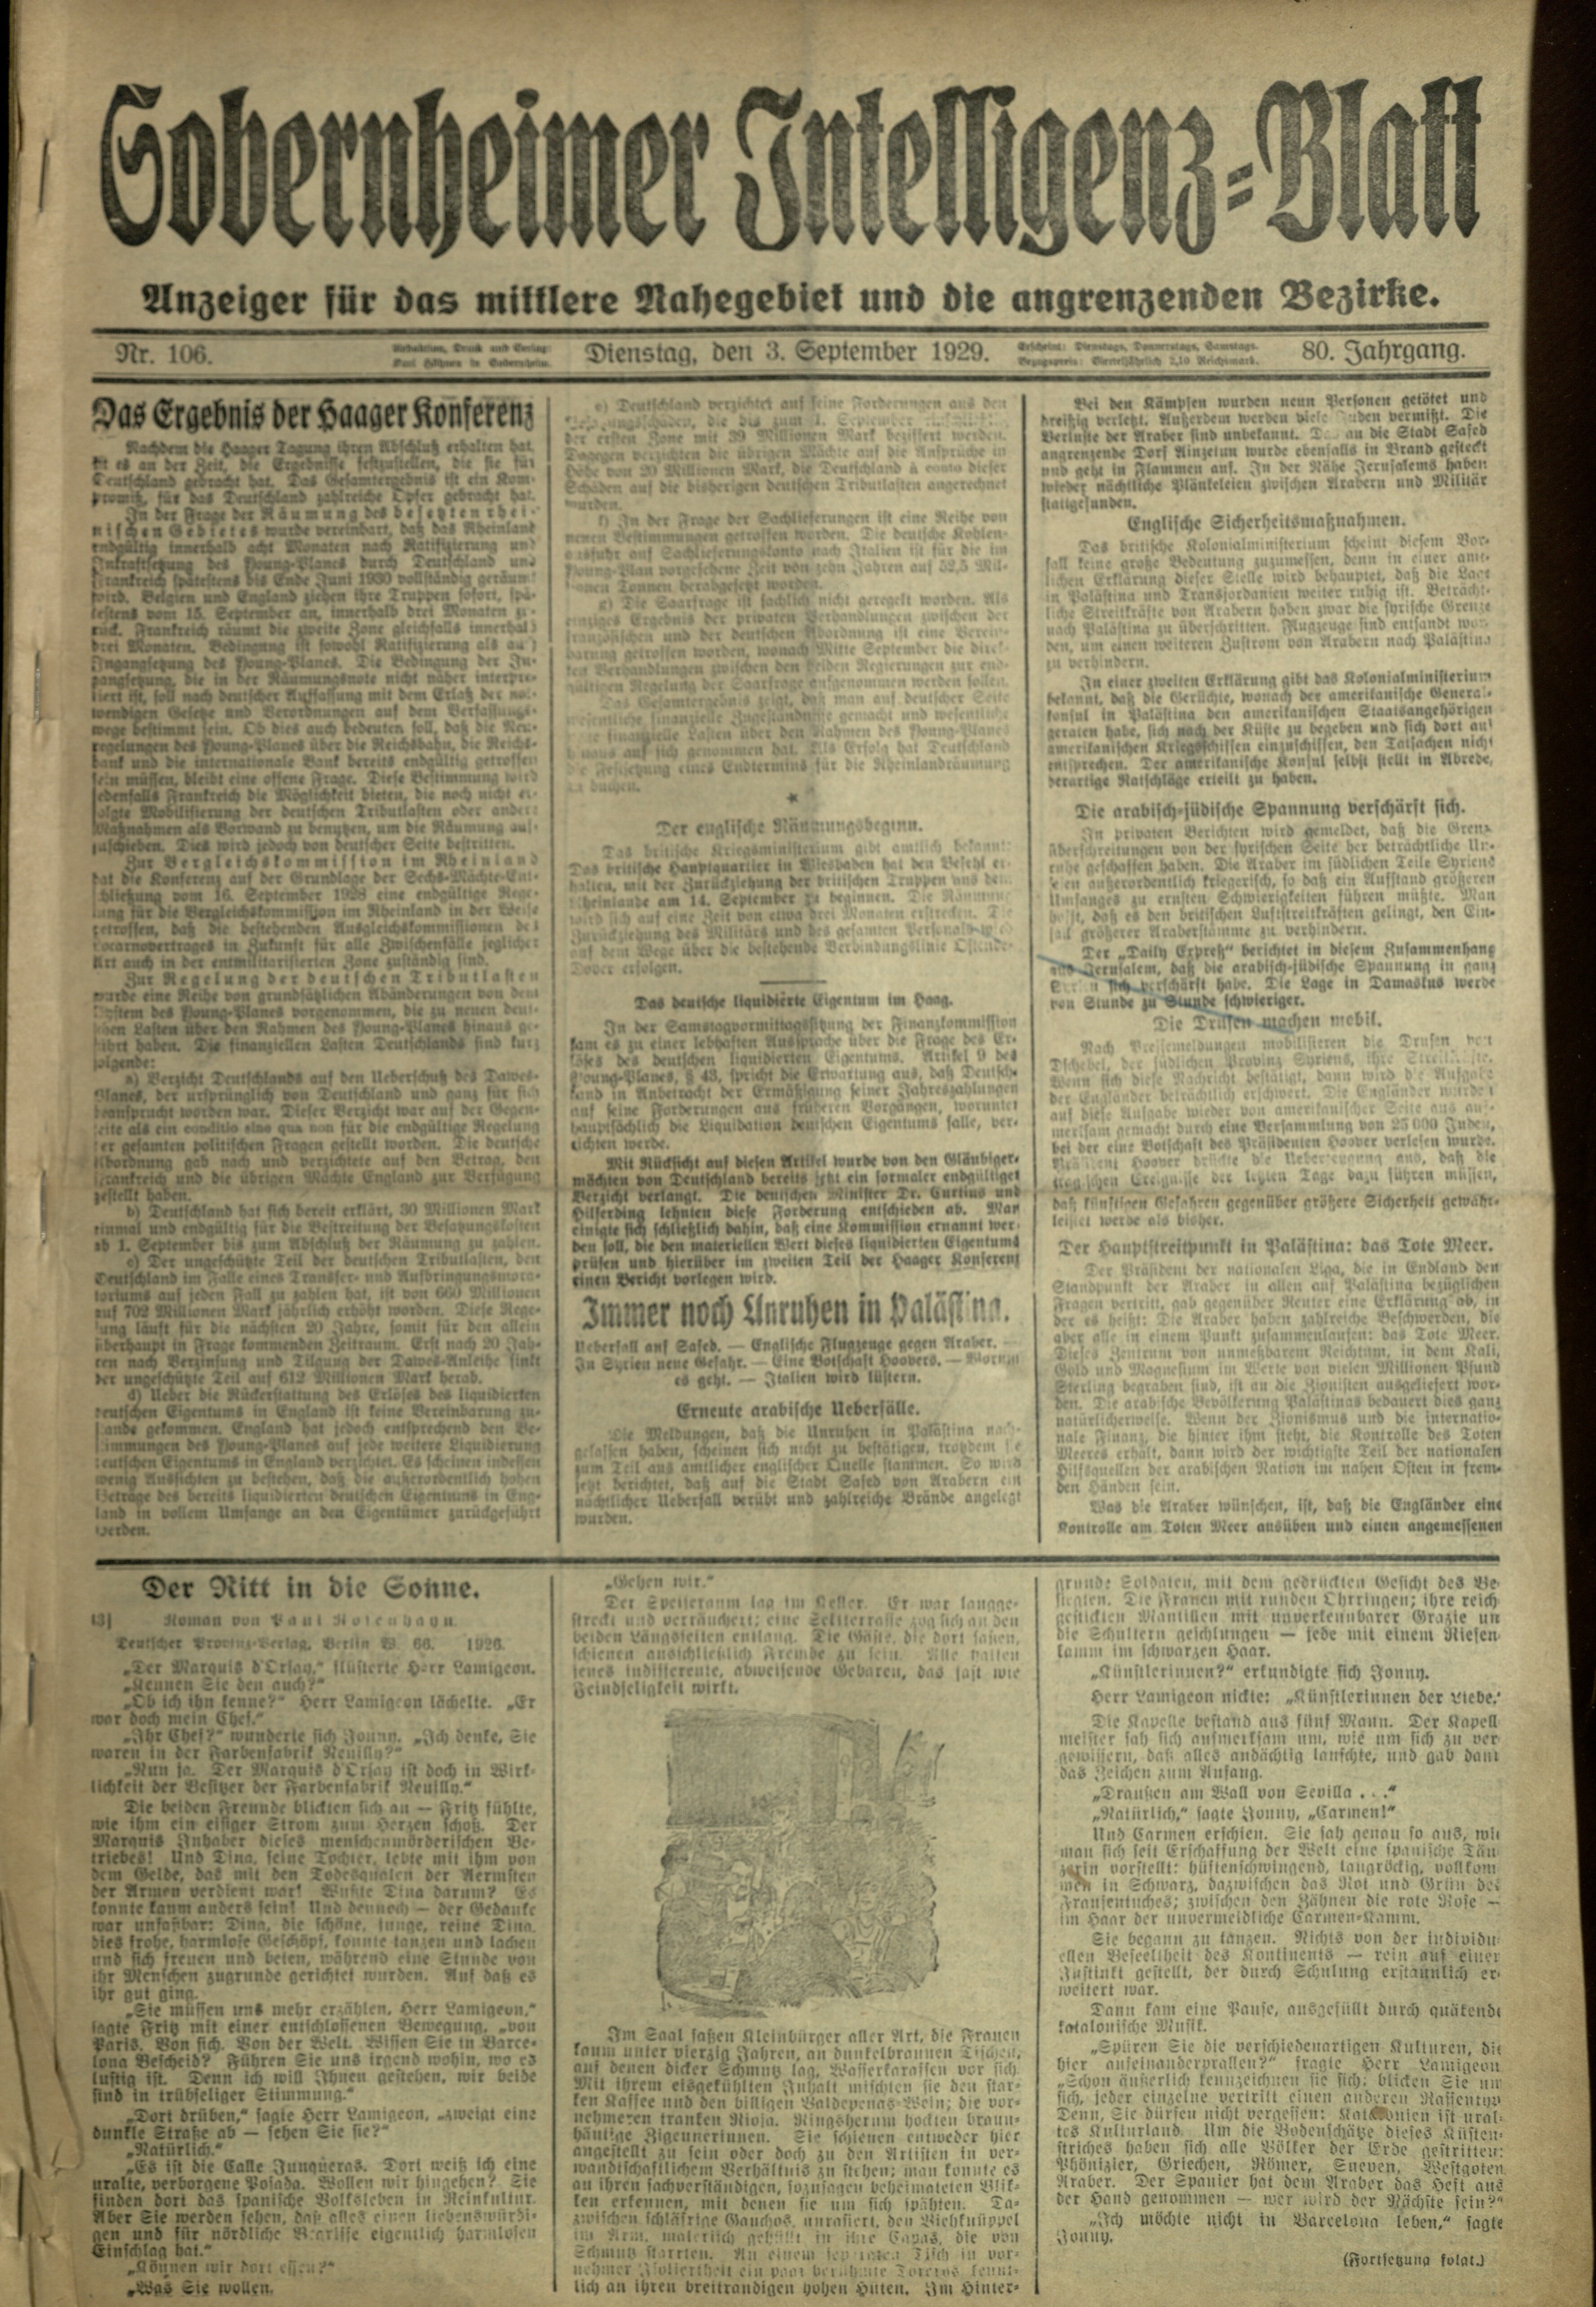 Zeitung: Sobernheimer Intelligenzblatt; September 1929, Jg. 80 Nr. 106 (Heimatmuseum Bad Sobernheim CC BY-NC-SA)